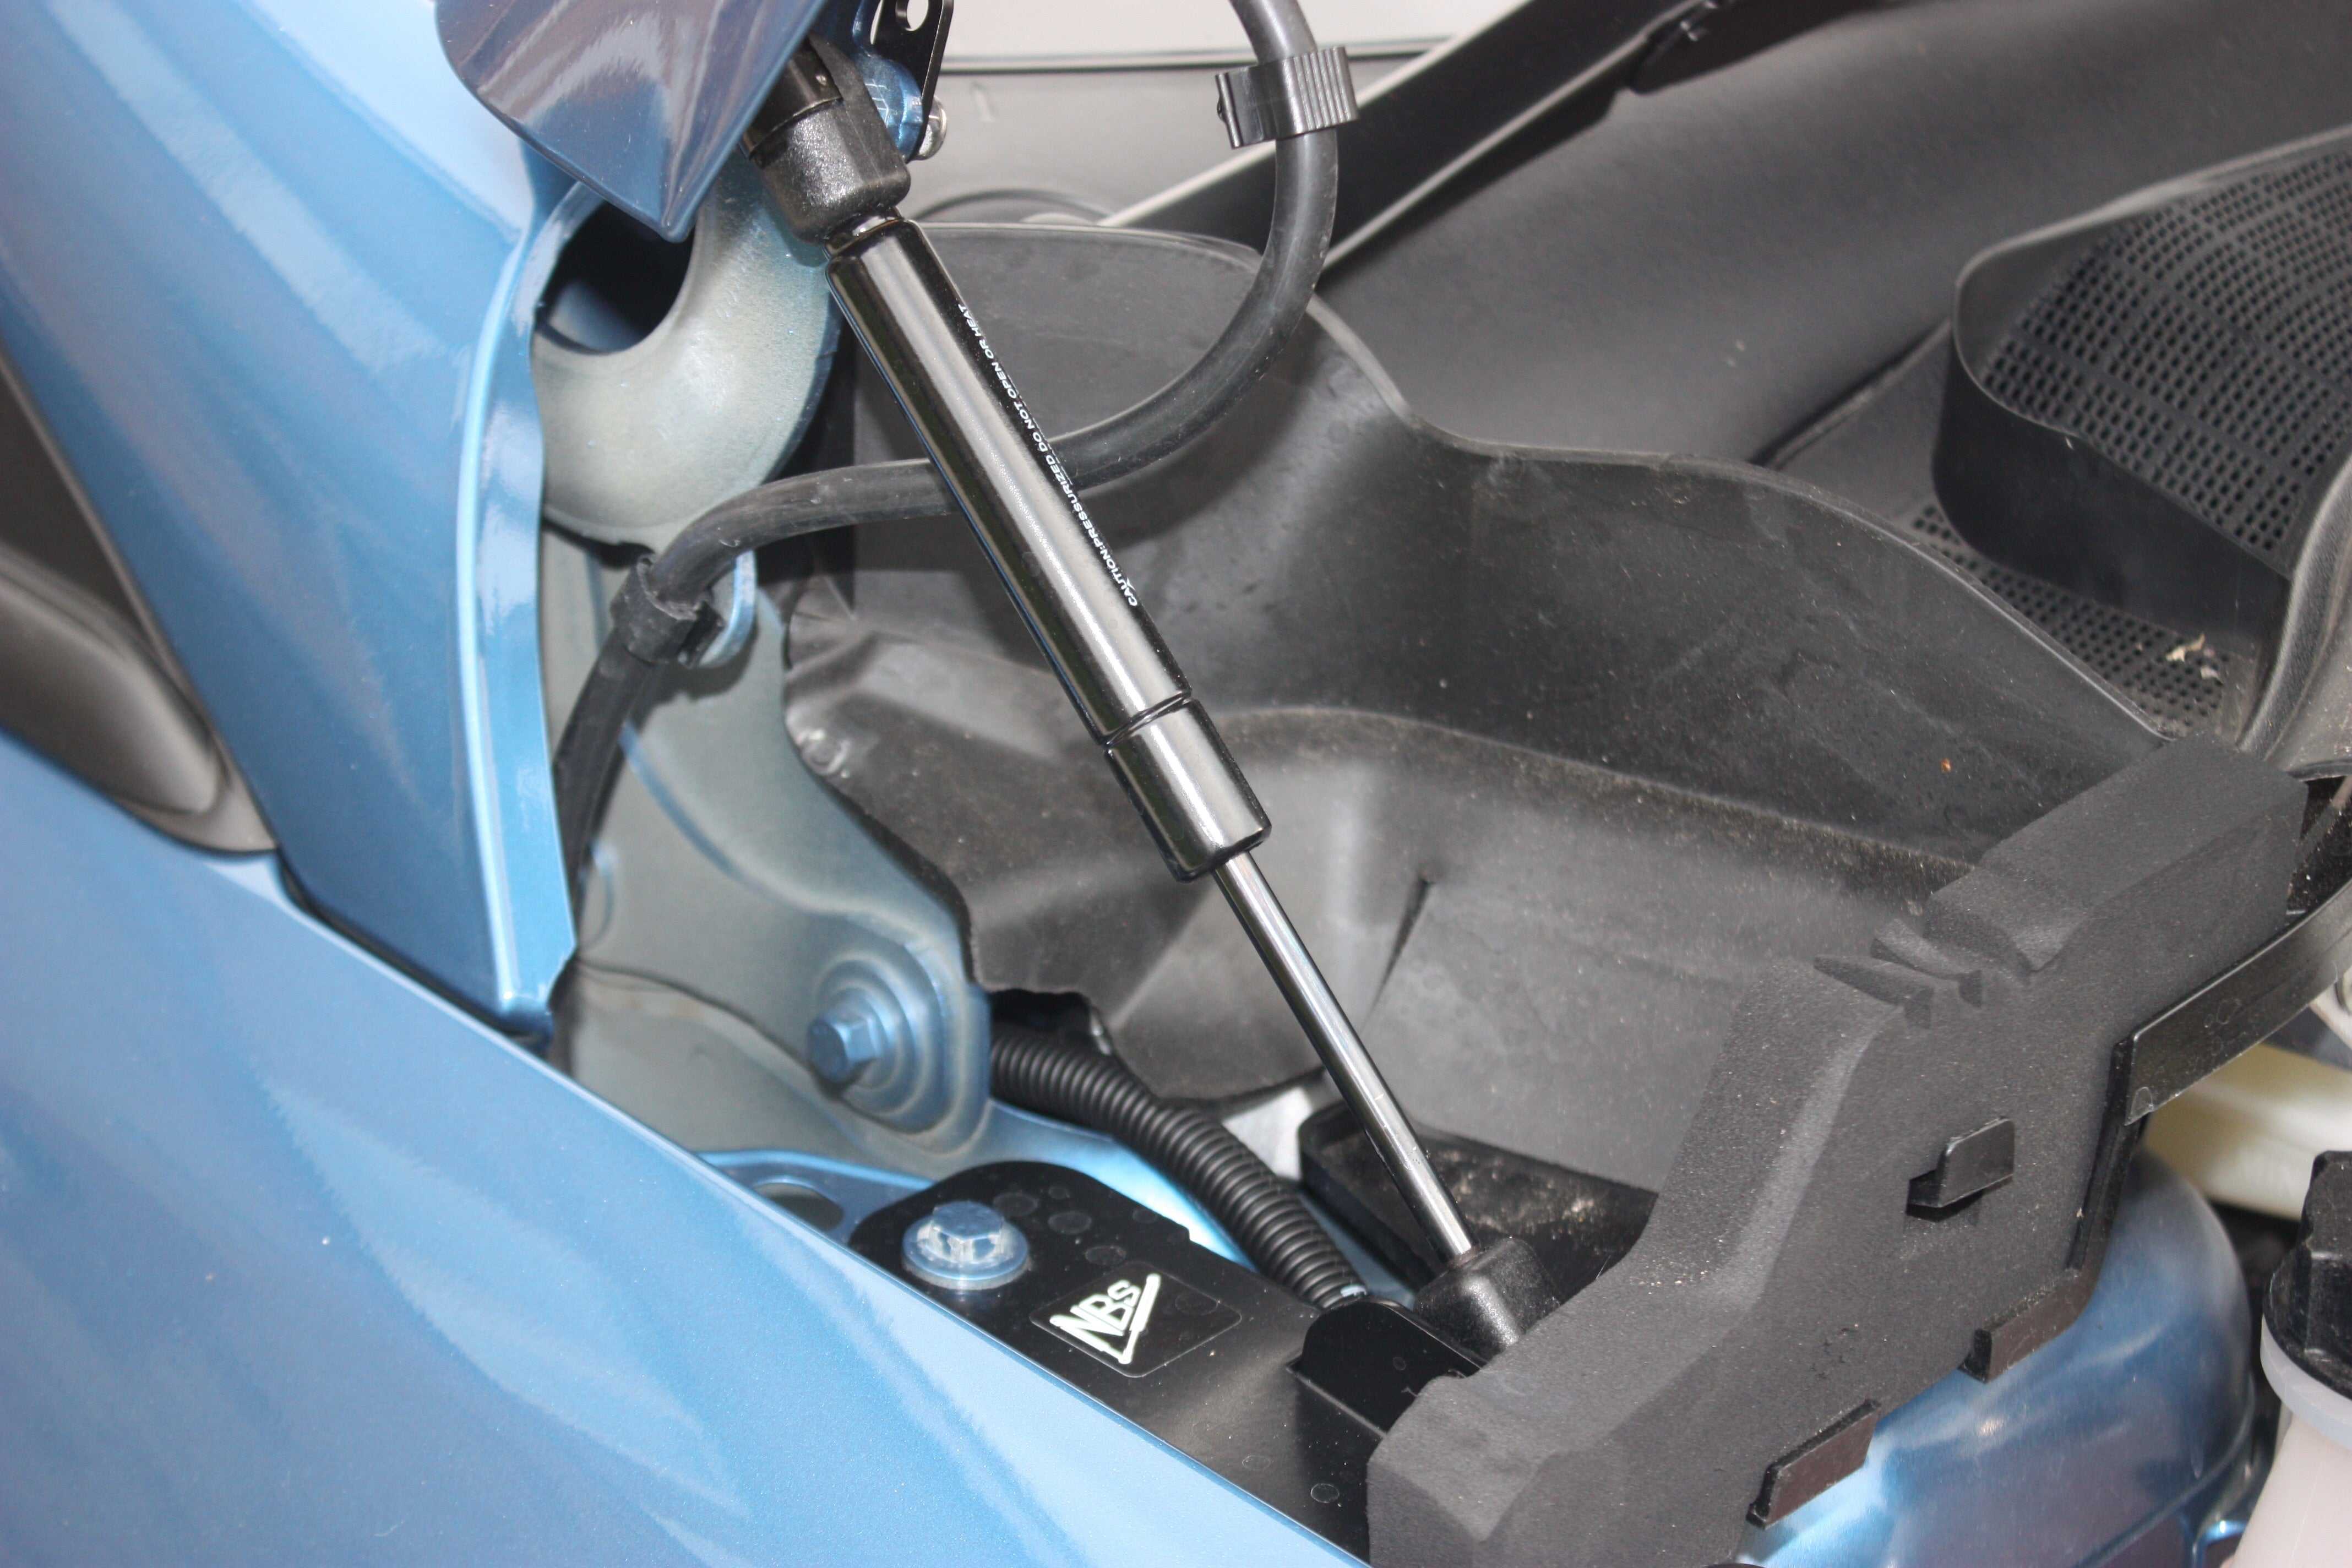 NB Styling, Fiesta MK8 Bonnet Strut Kit (NB Styling)